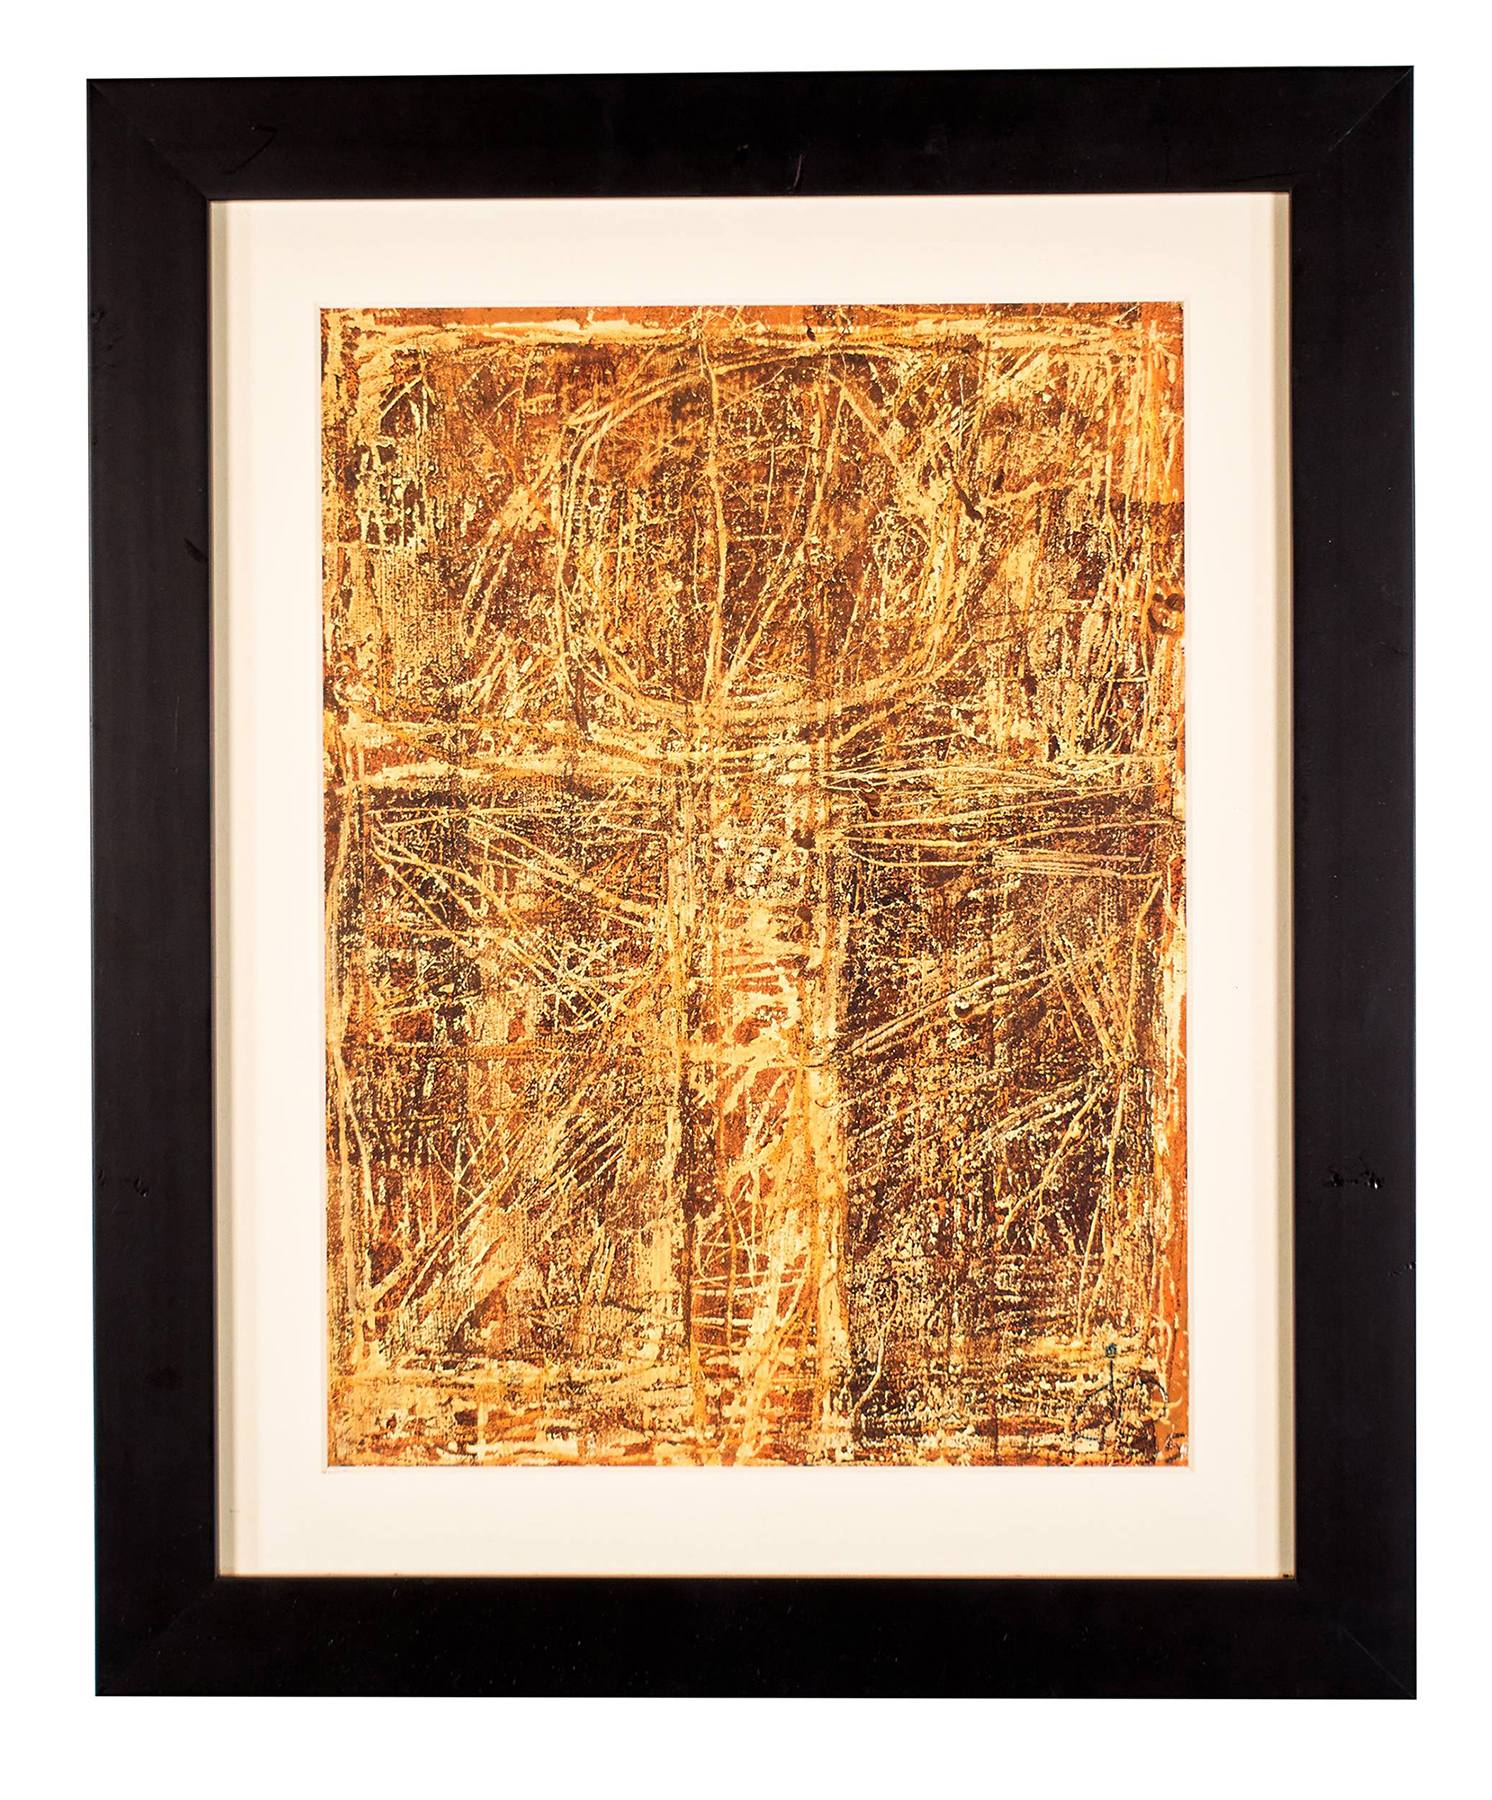 Irving B. Haynes (American, 1927-2005), wax resist painting on paper, $100-$300.